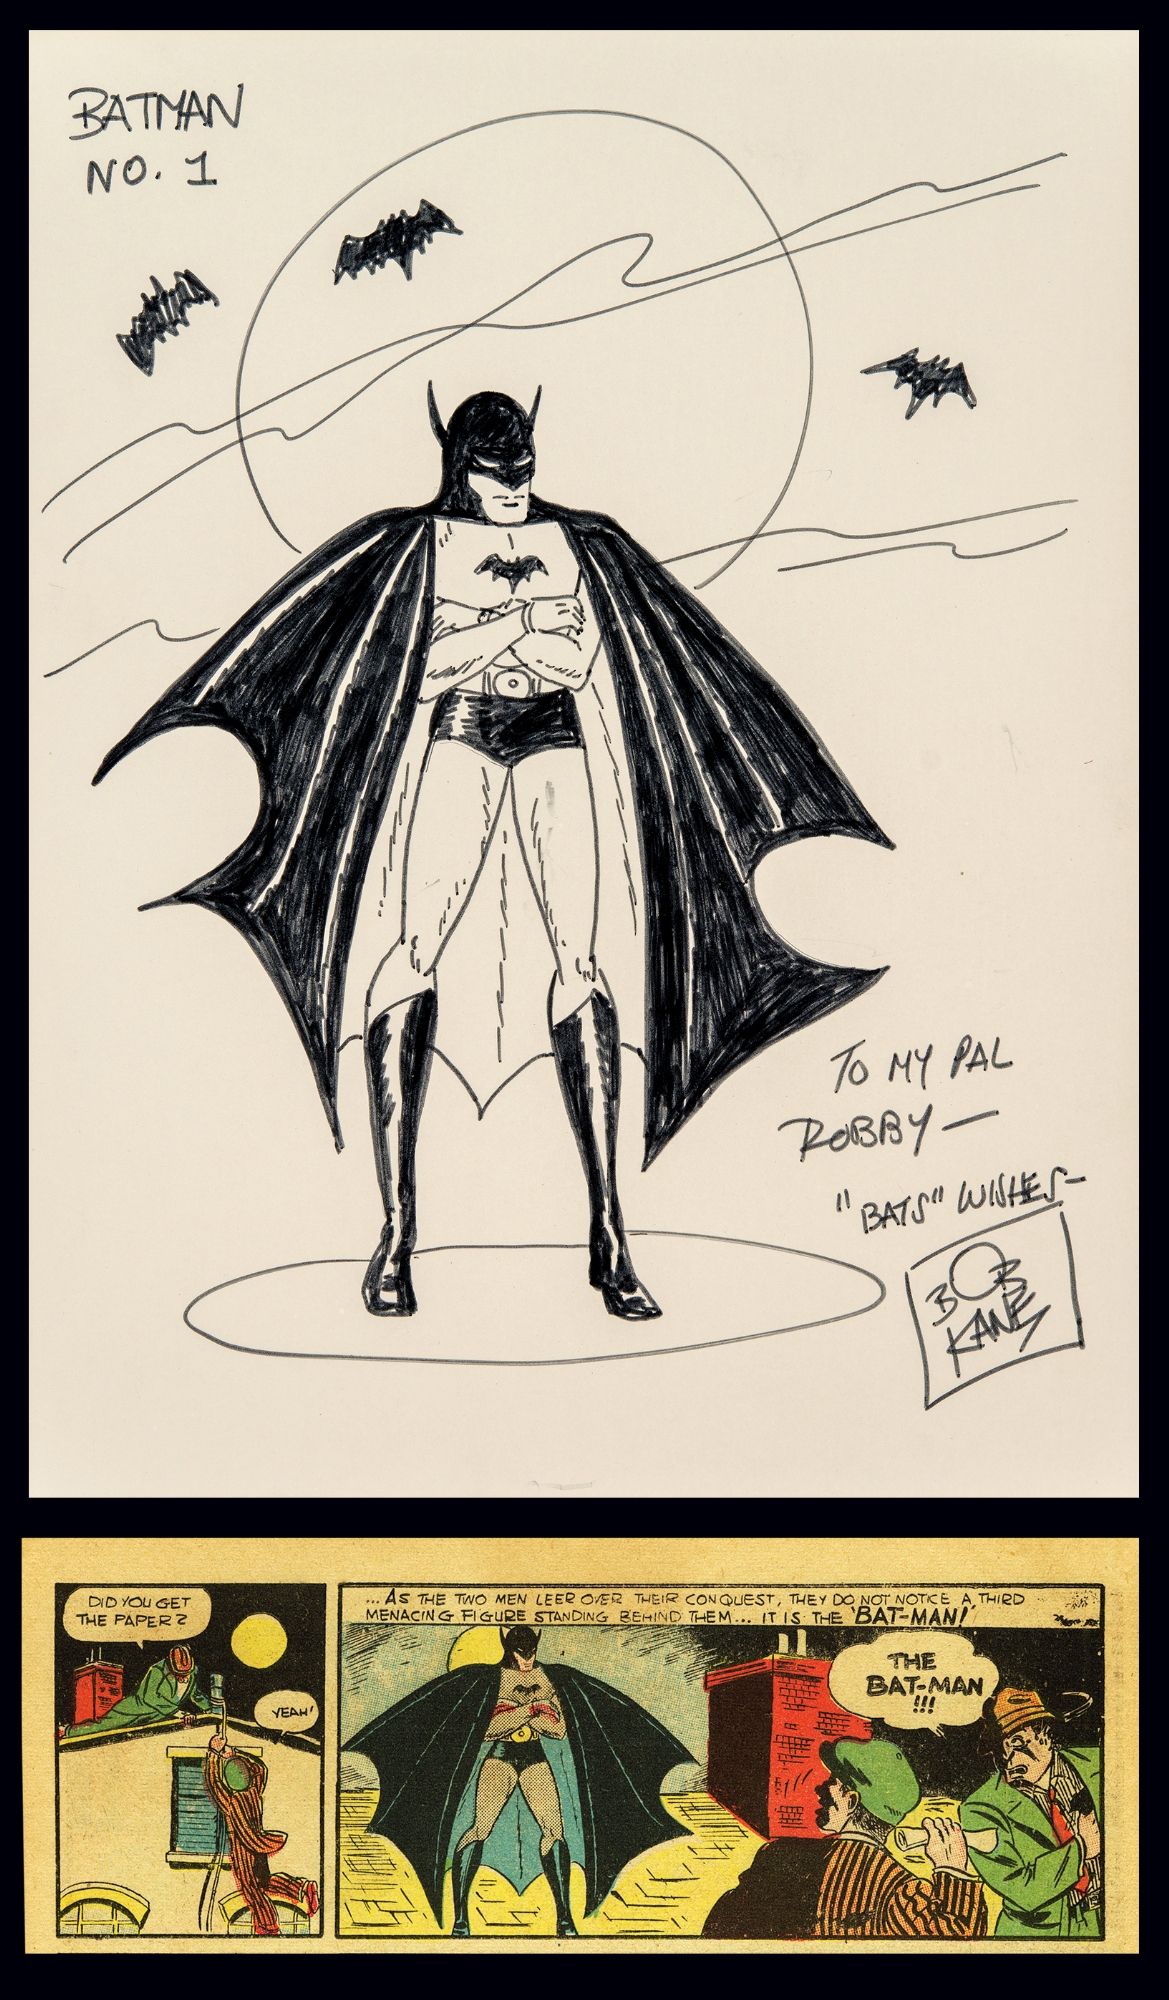 Batman  Batman comic art, Batman artwork, Batman detective comics